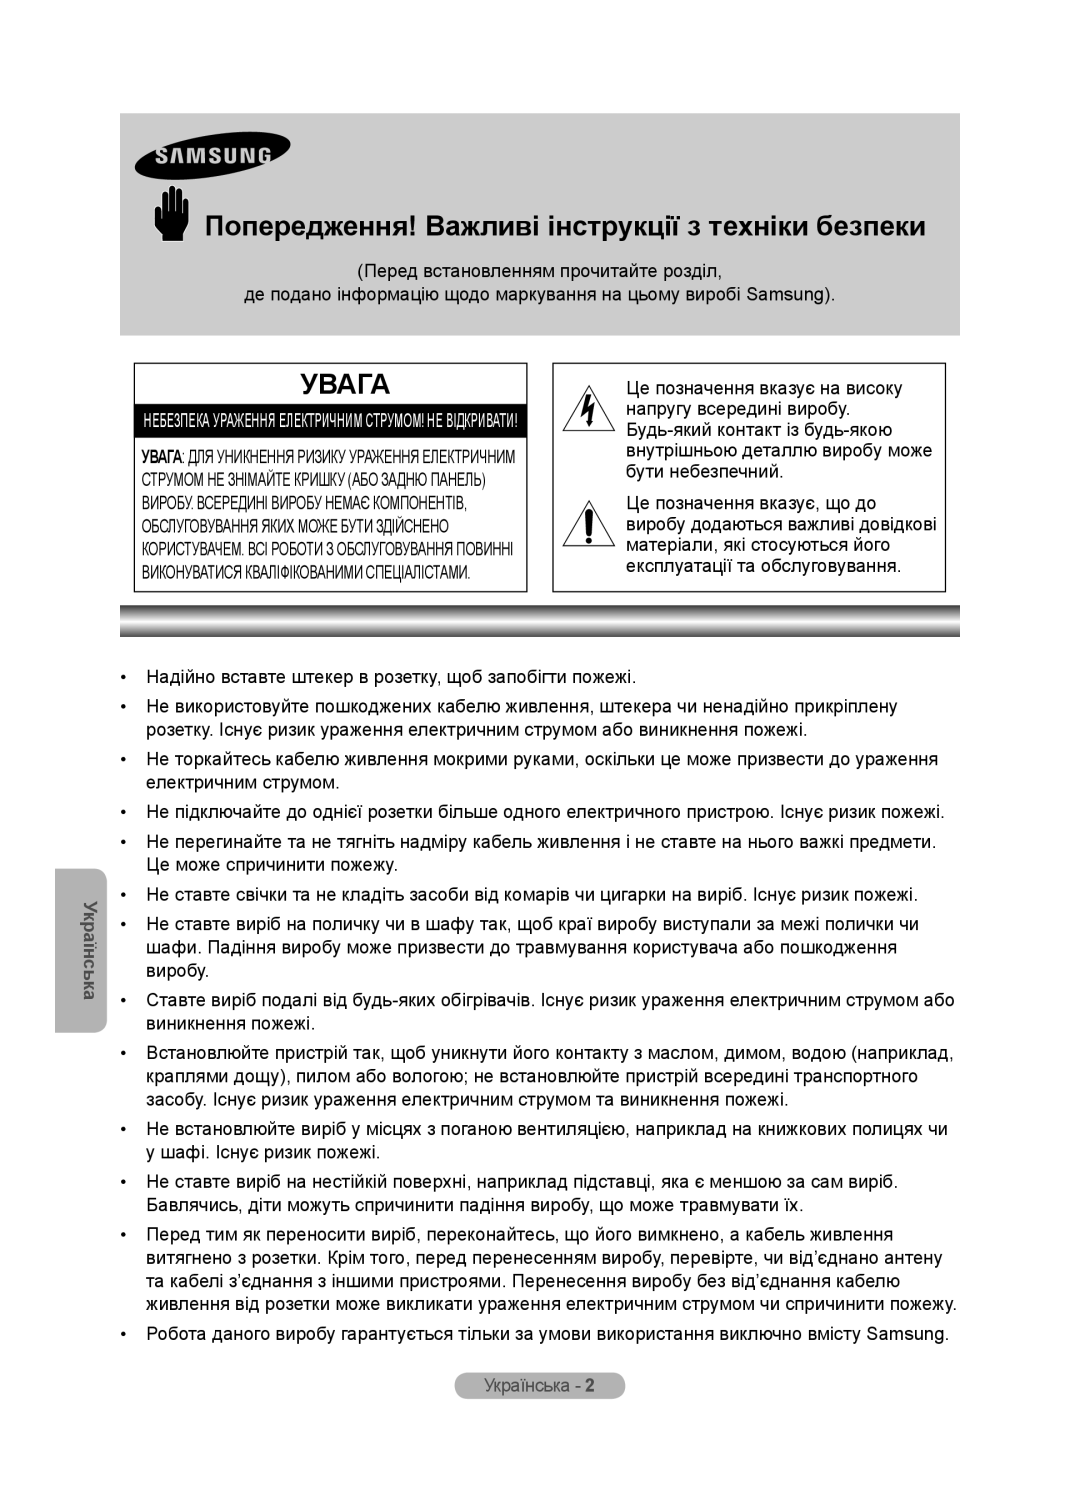 Samsung MR-16SB2 manual Попередження! Важливі інструкції з техніки безпеки, Увага, Українська 